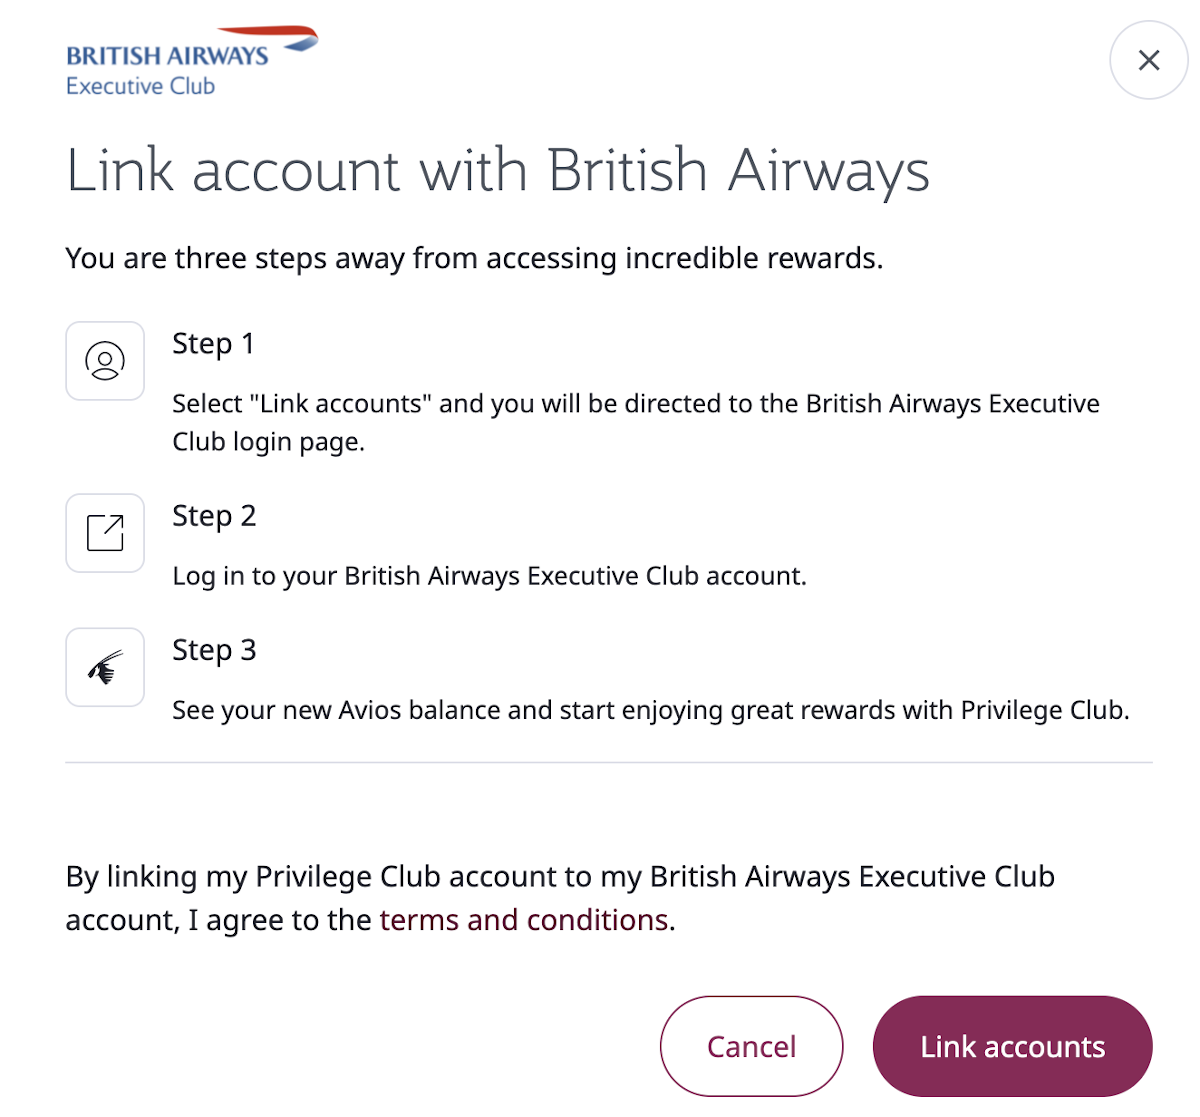 Qatar Privilege Club mit British Airways Executive Club verbinden